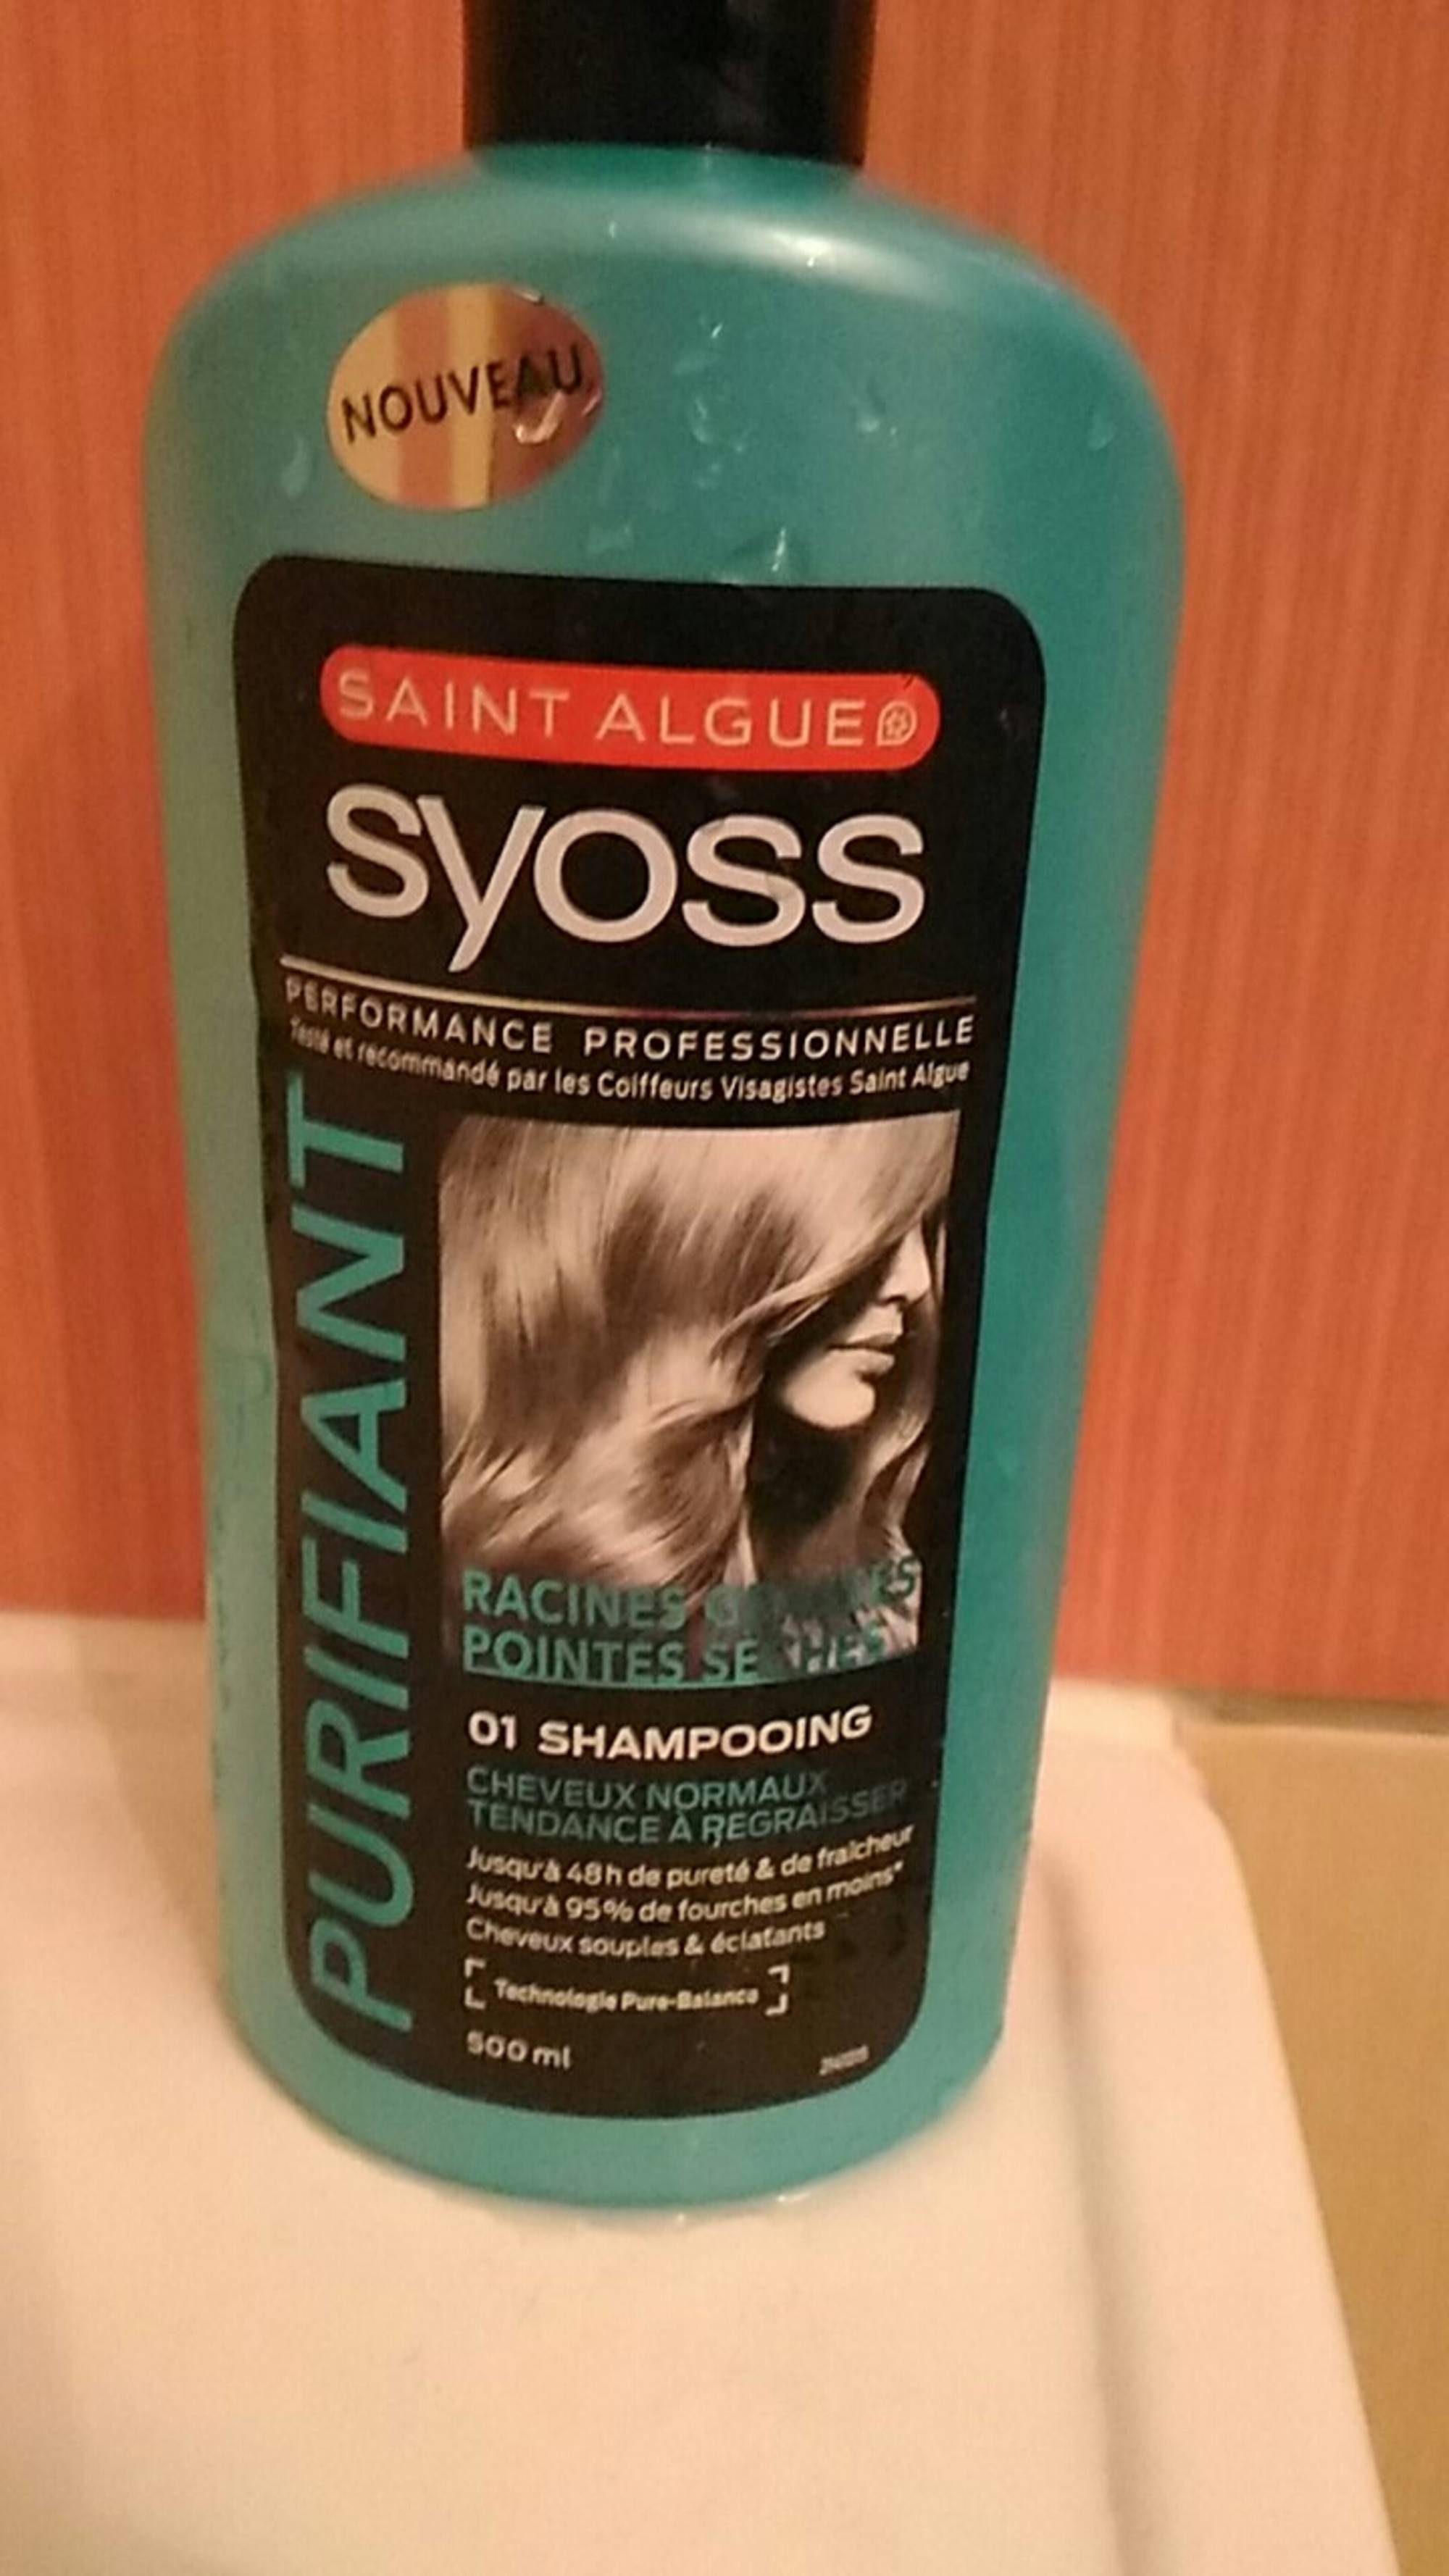 SAINT ALGUE SYOSS - Purifiant - 01 Shampooing